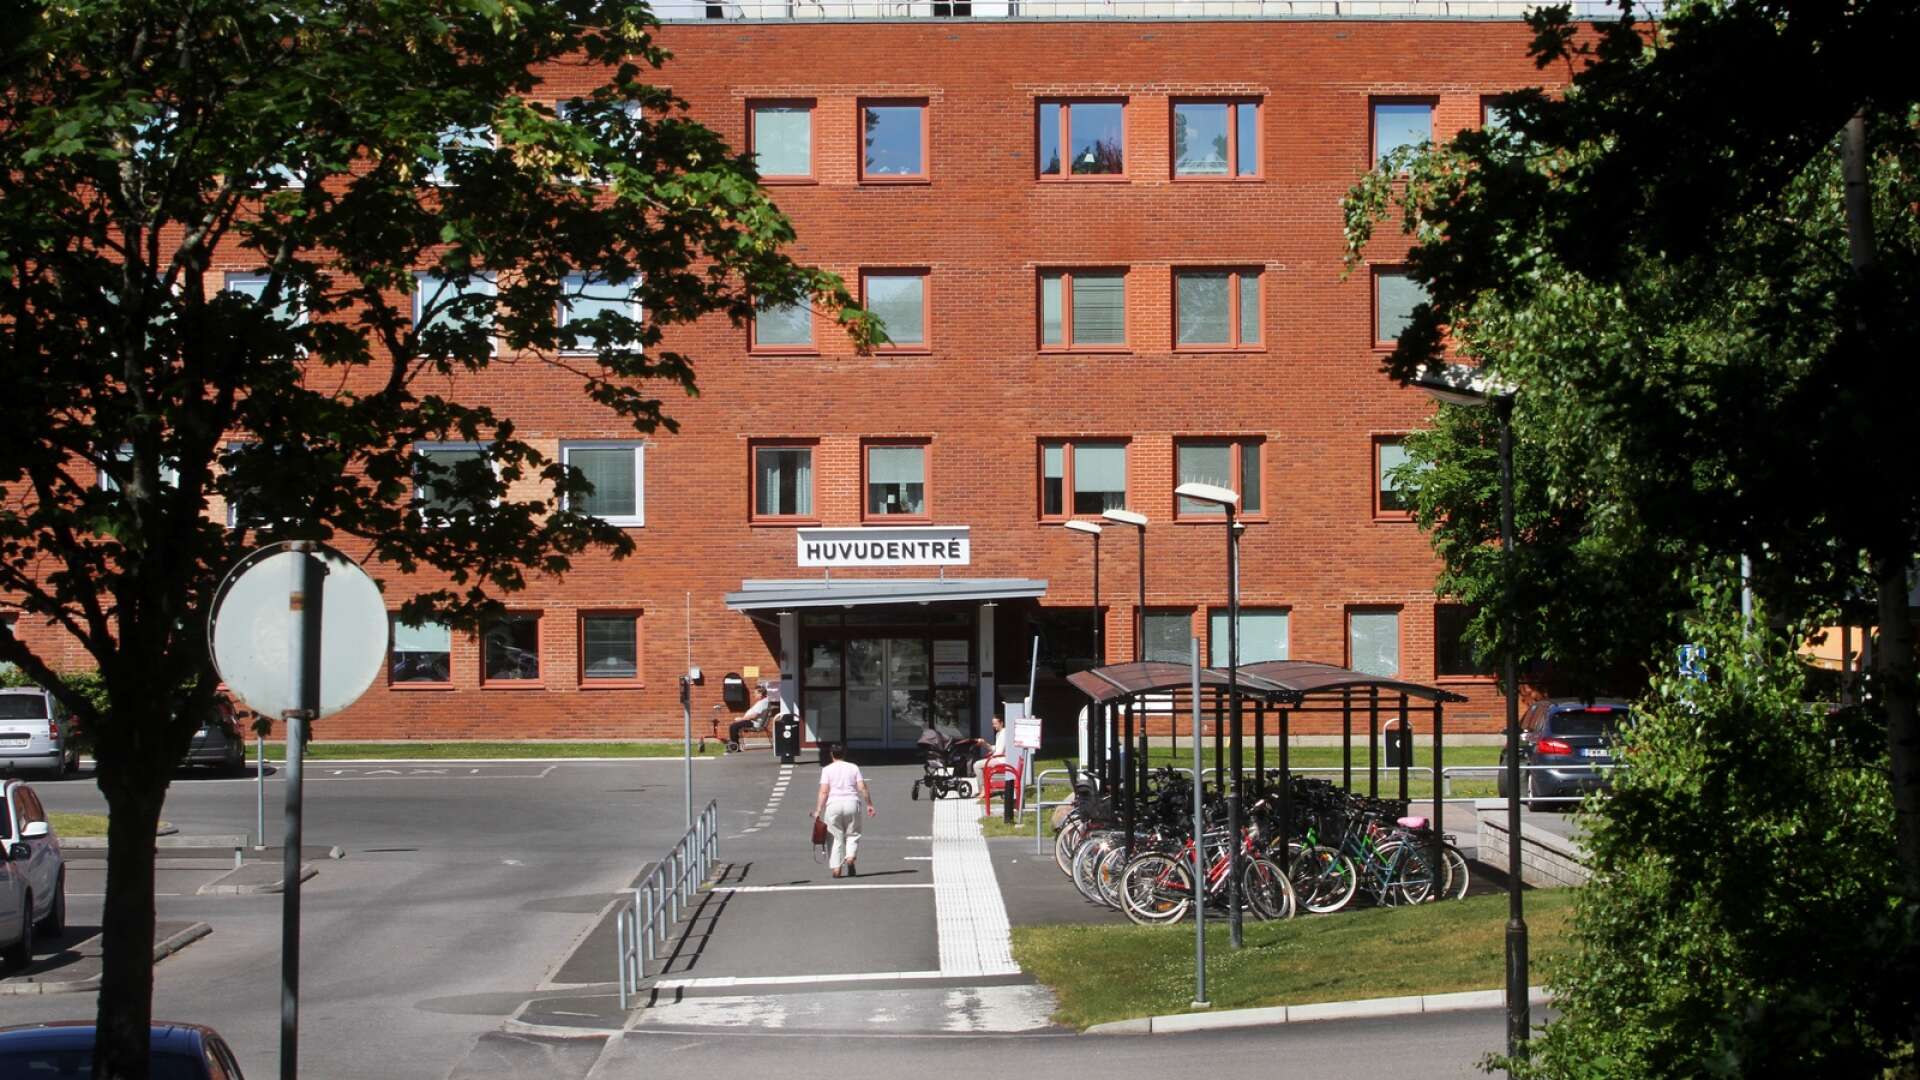 Skaraborgs sjukhus behöver spara pengar. Ledningen har tagit fram flera alternativ, bland annat att lägga ner hela eller delar av Mariestads sjukhus. Förslaget får nu kritik från lokala politiker.